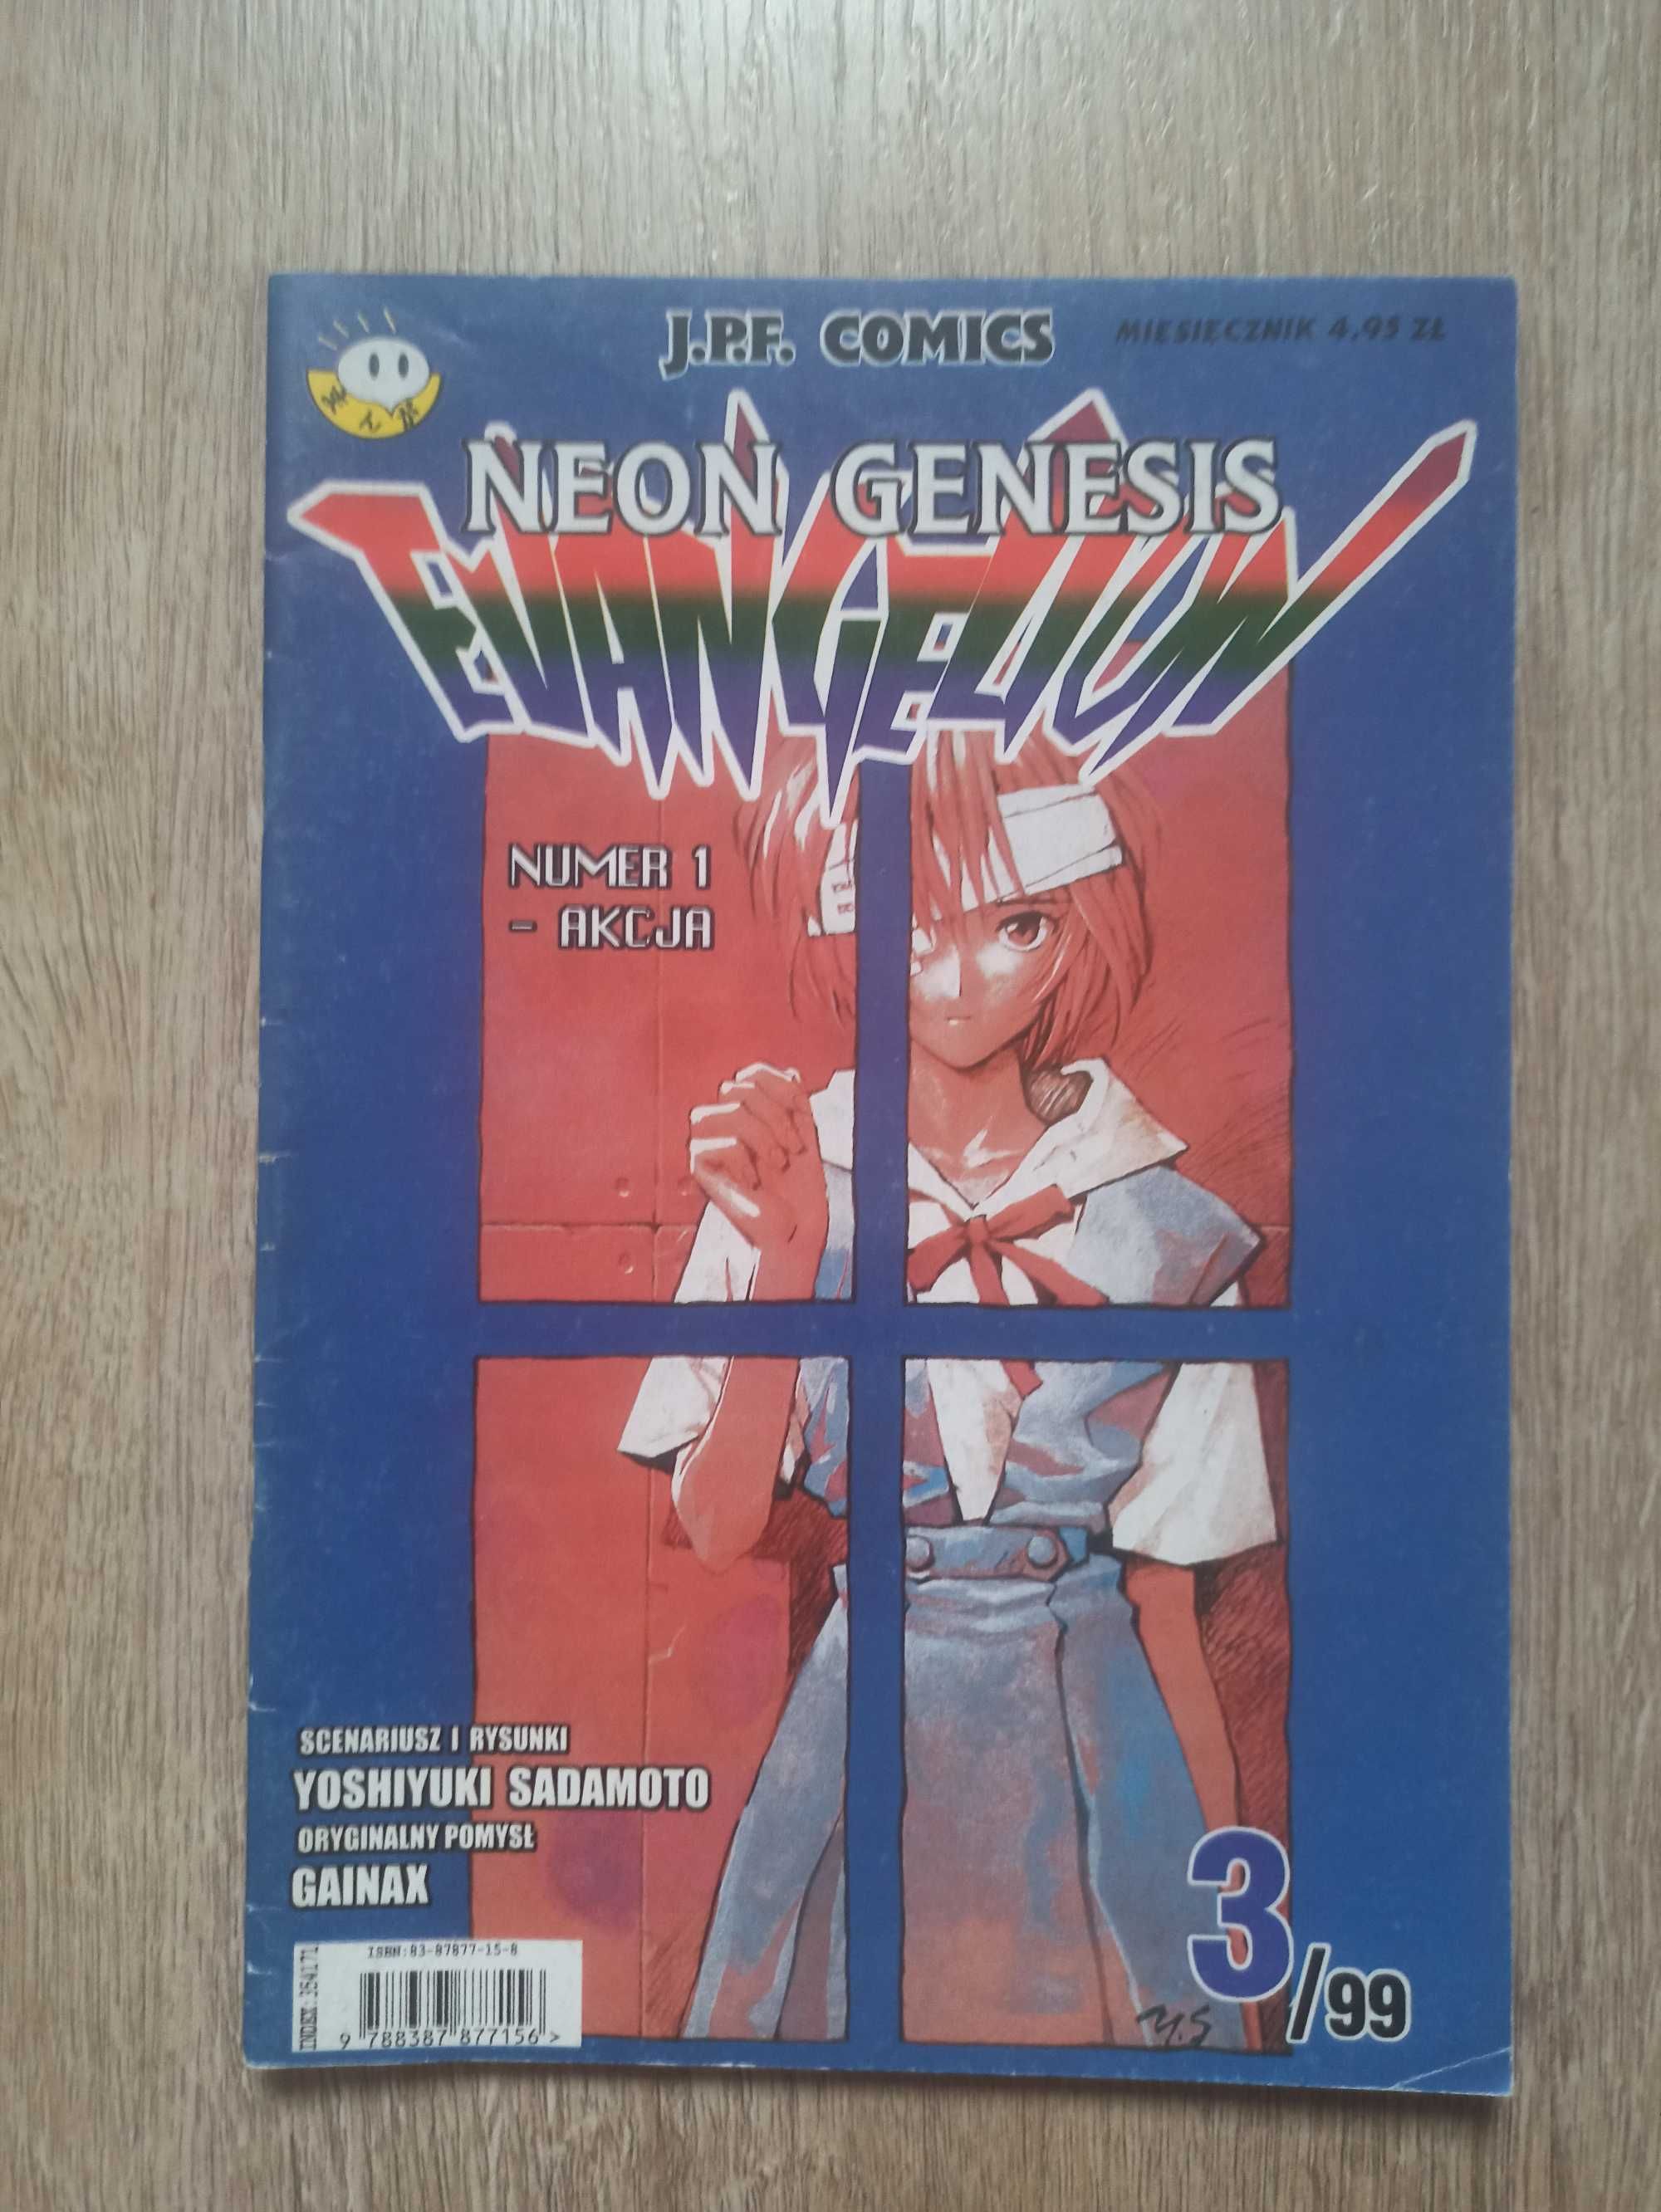 Yoshiyuki Sadamoto - Neon Genesis Evangelion 3/99